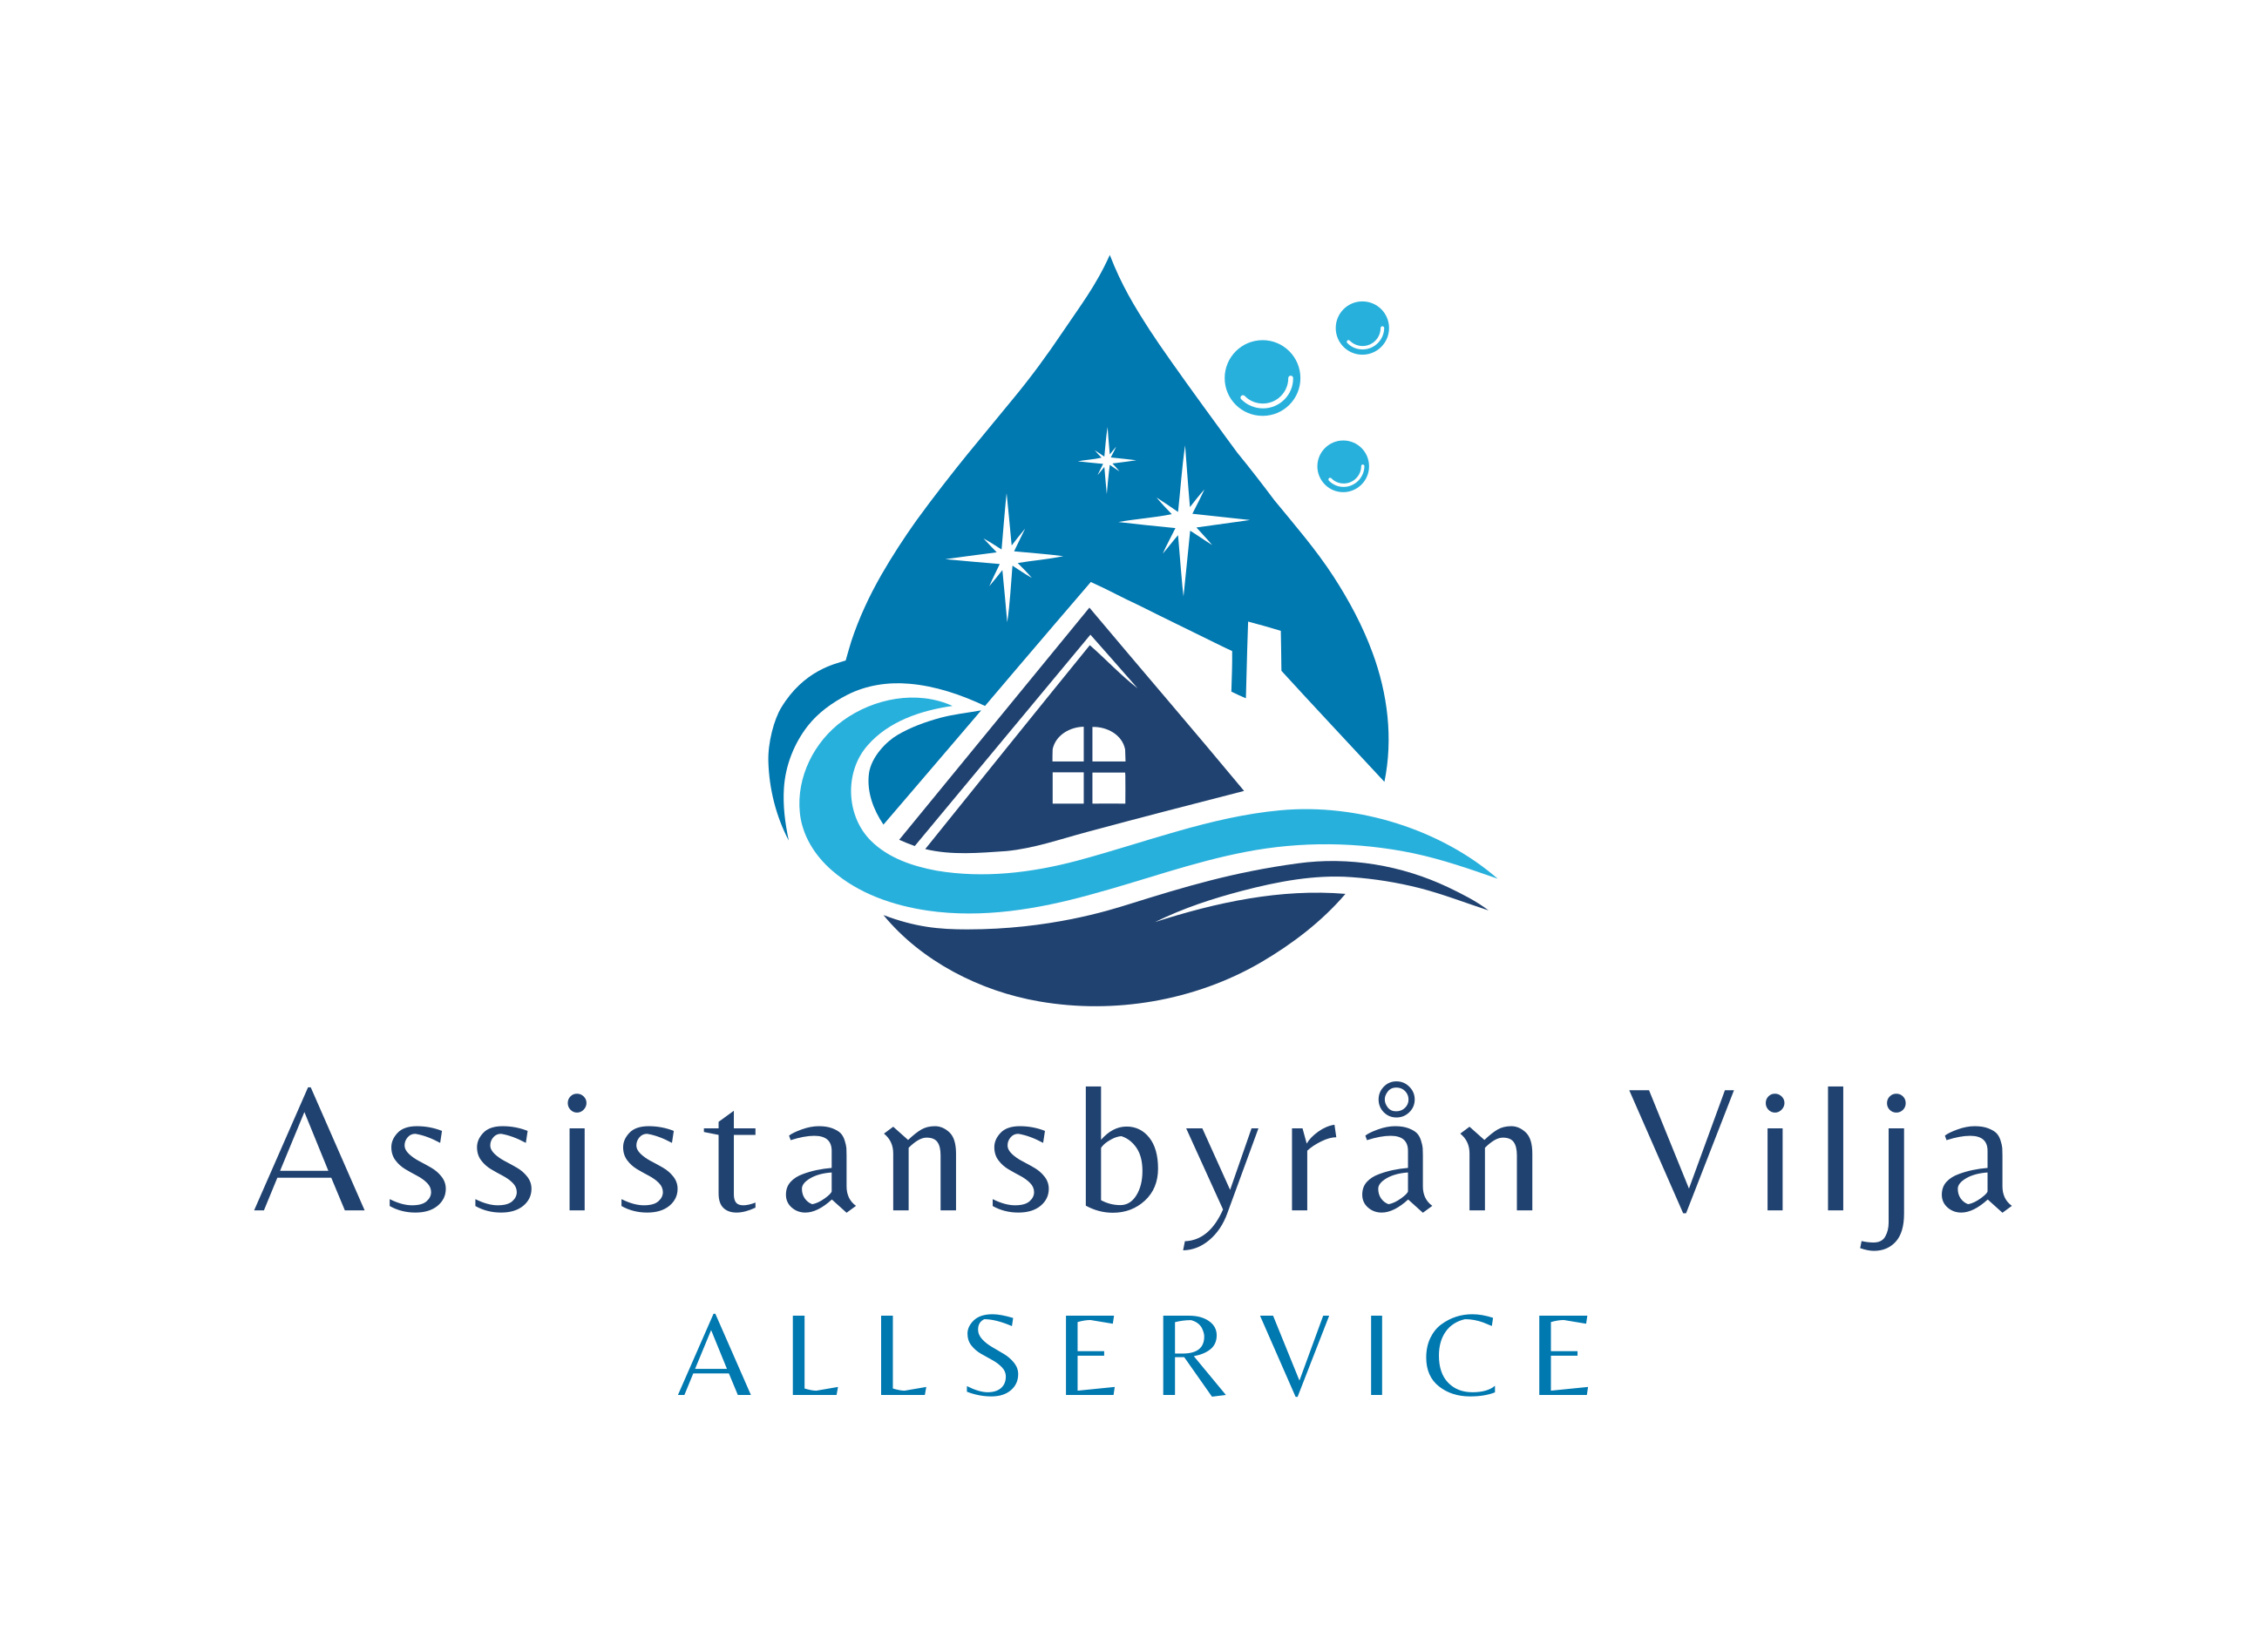 Assistansbyrån Vilja-Allservice